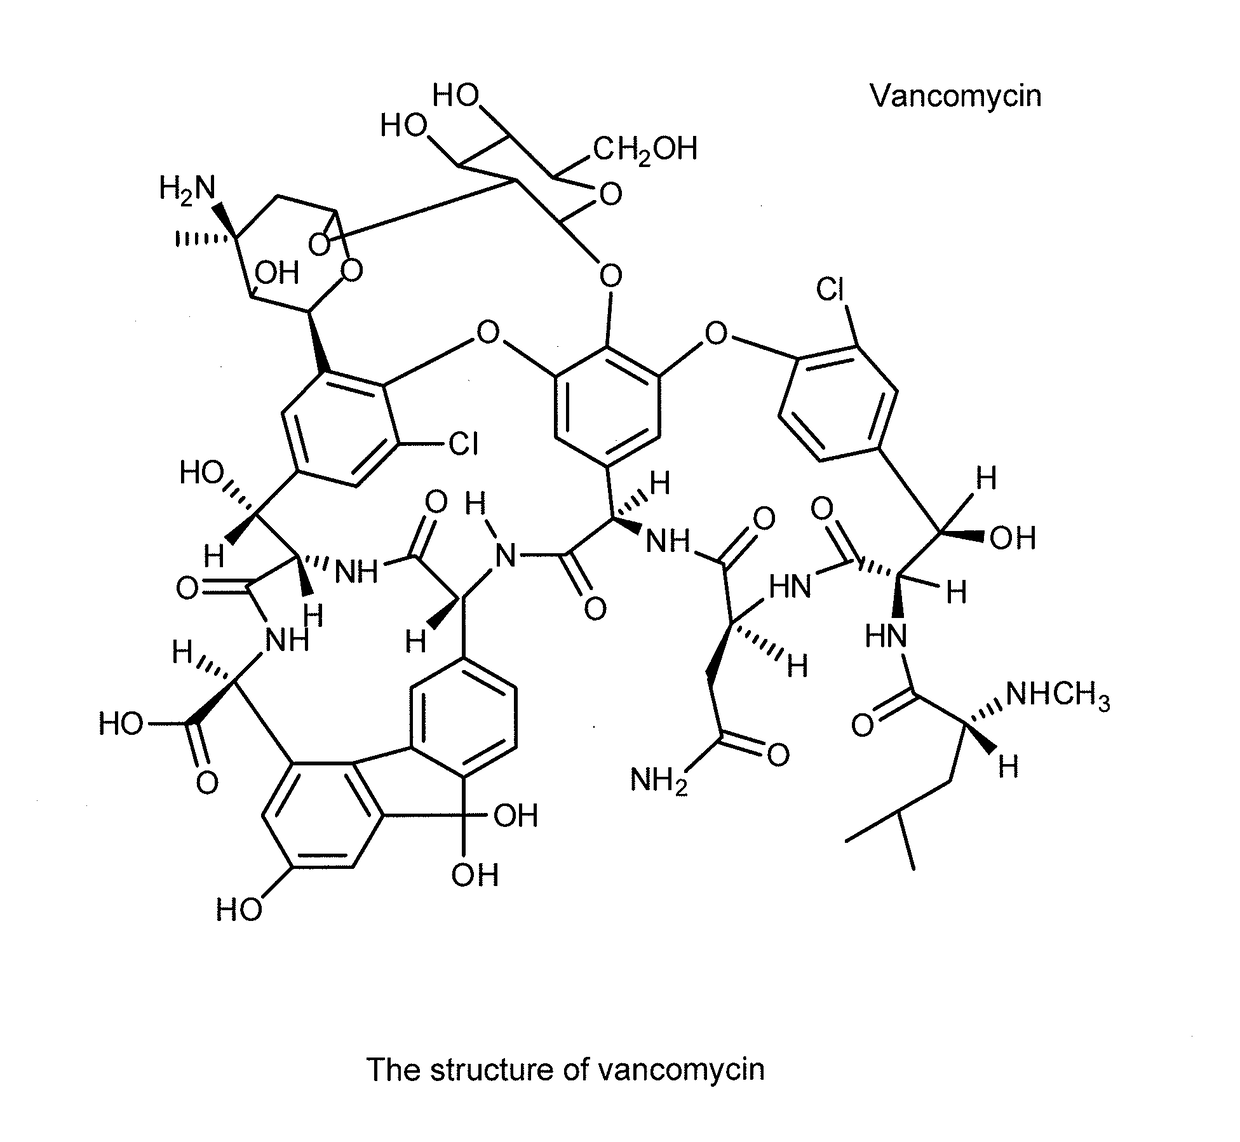 Aqueous solution formulations of vancomycin